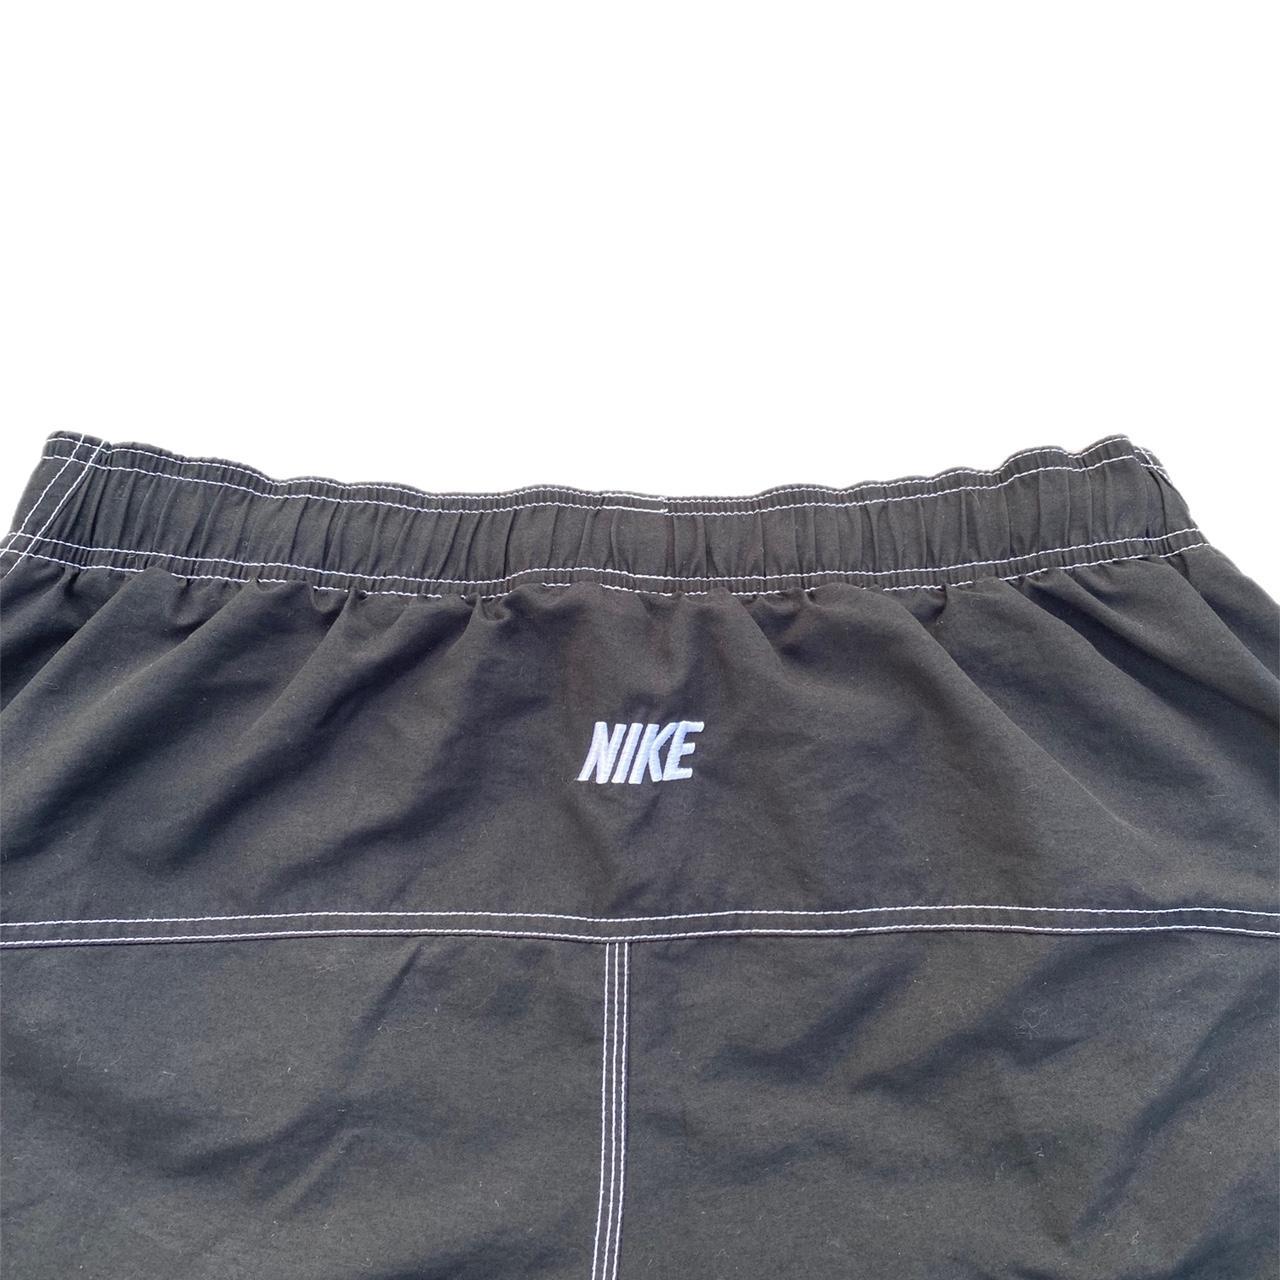 Nike Men's Black and White Swim-briefs-shorts (3)